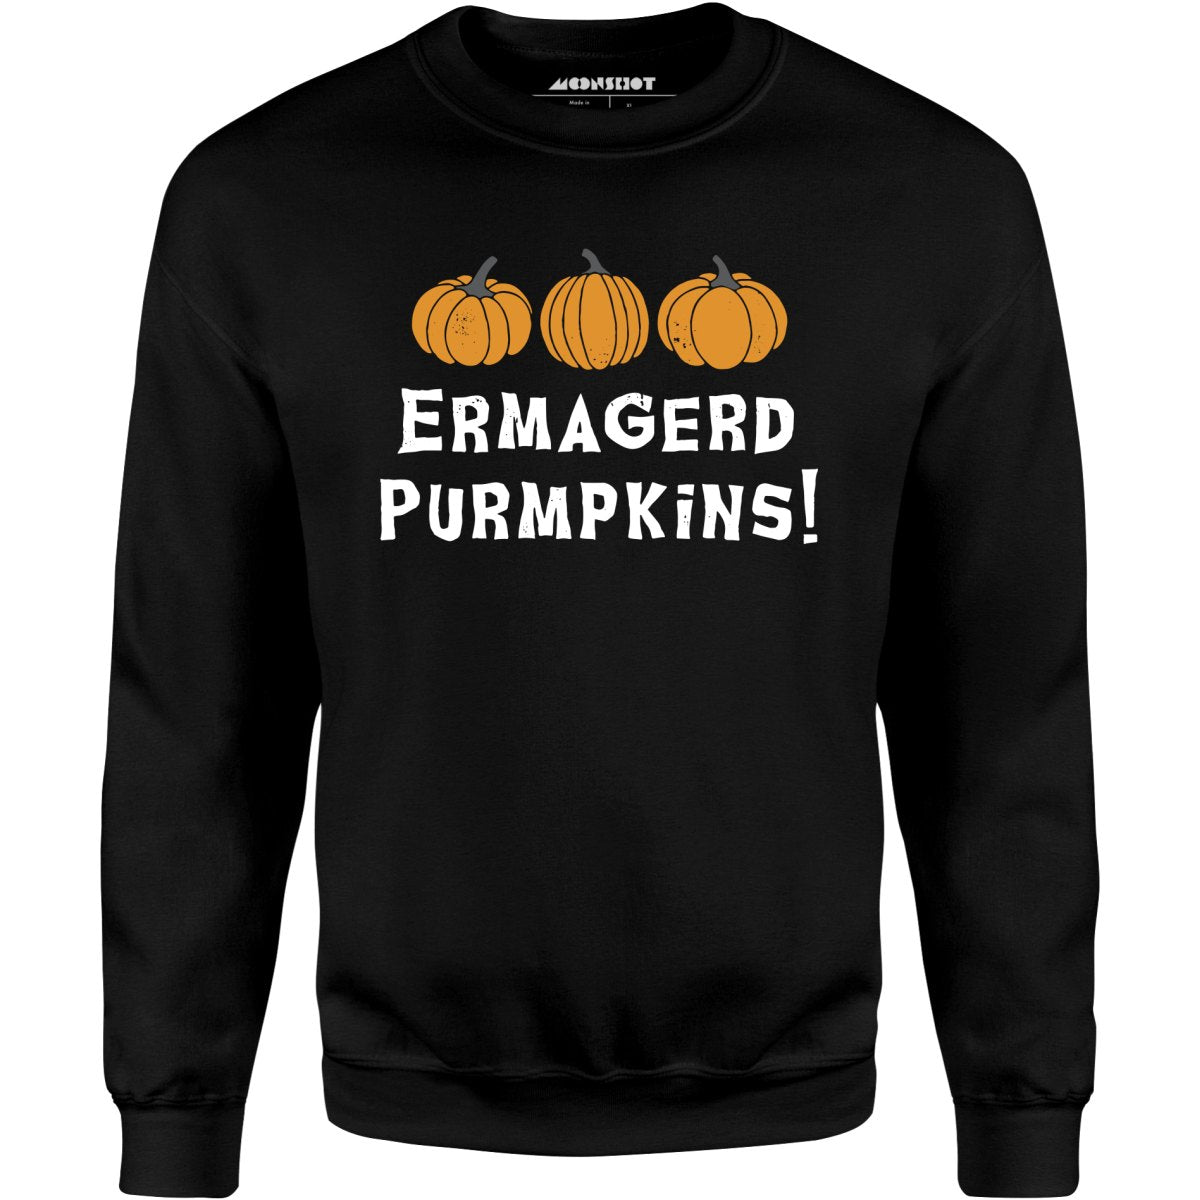 Ermagerd Purmpkins! - Unisex Sweatshirt